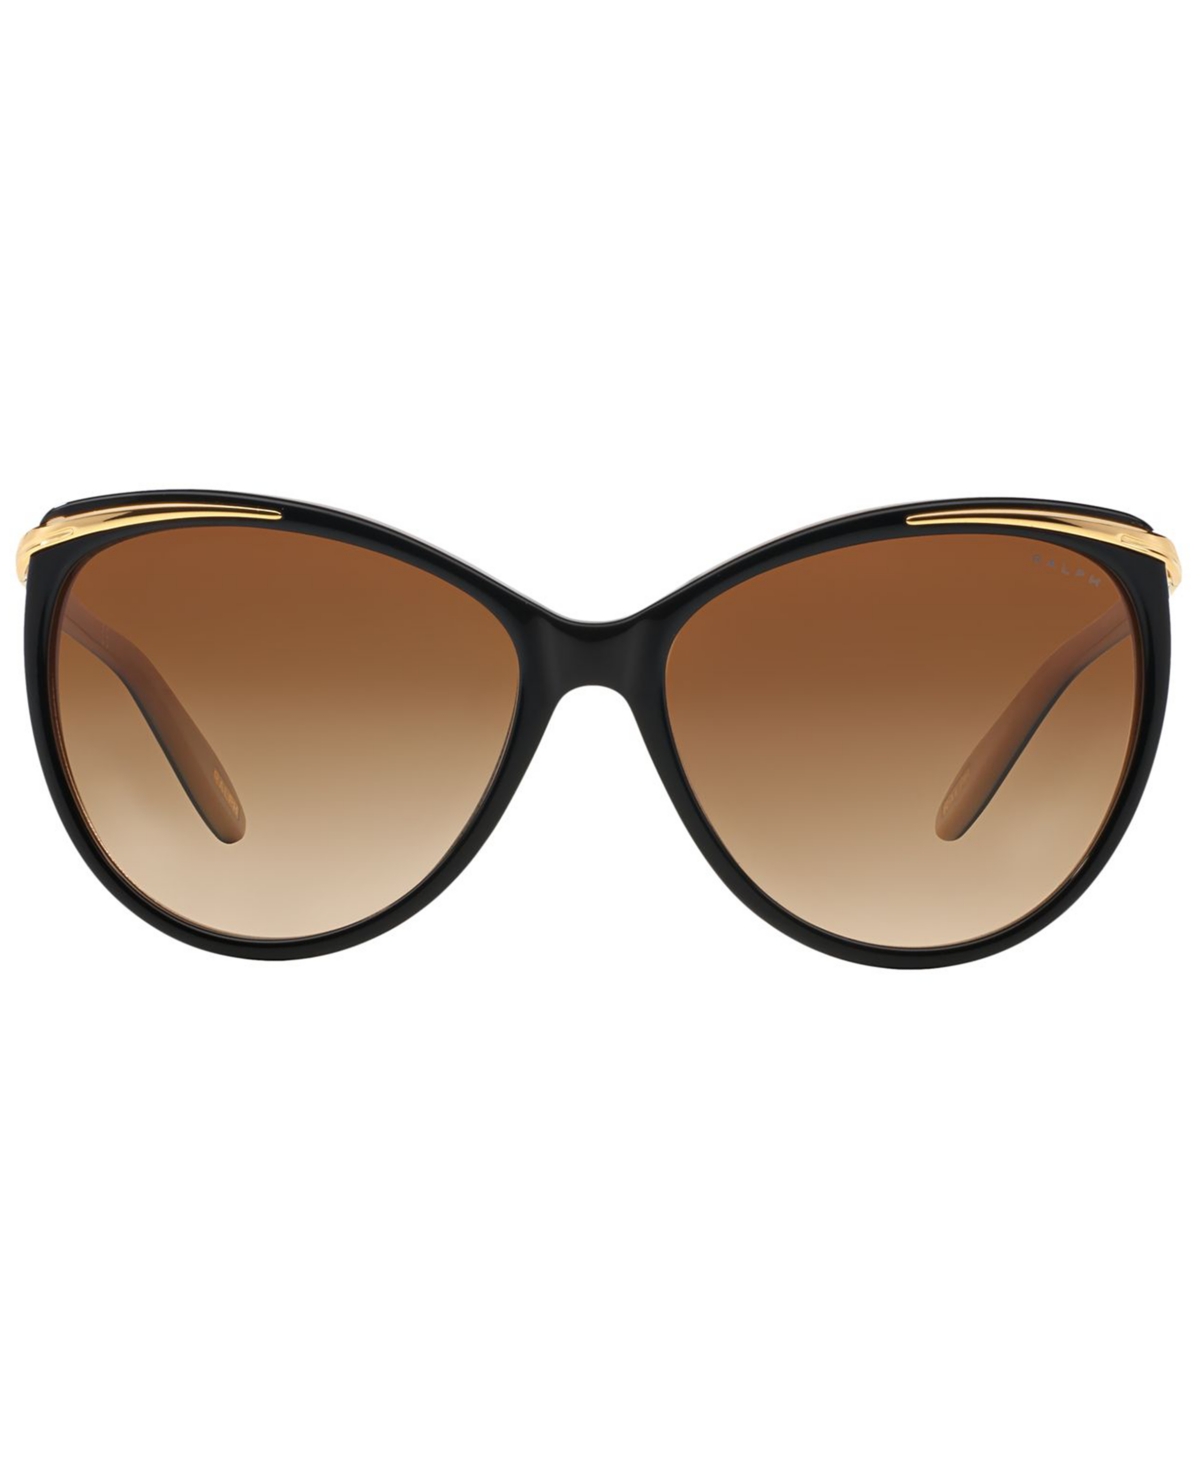 Shop Ralph Lauren Ralph Women's Sunglasses, Ra5150 In Black,nude,brown Gradient